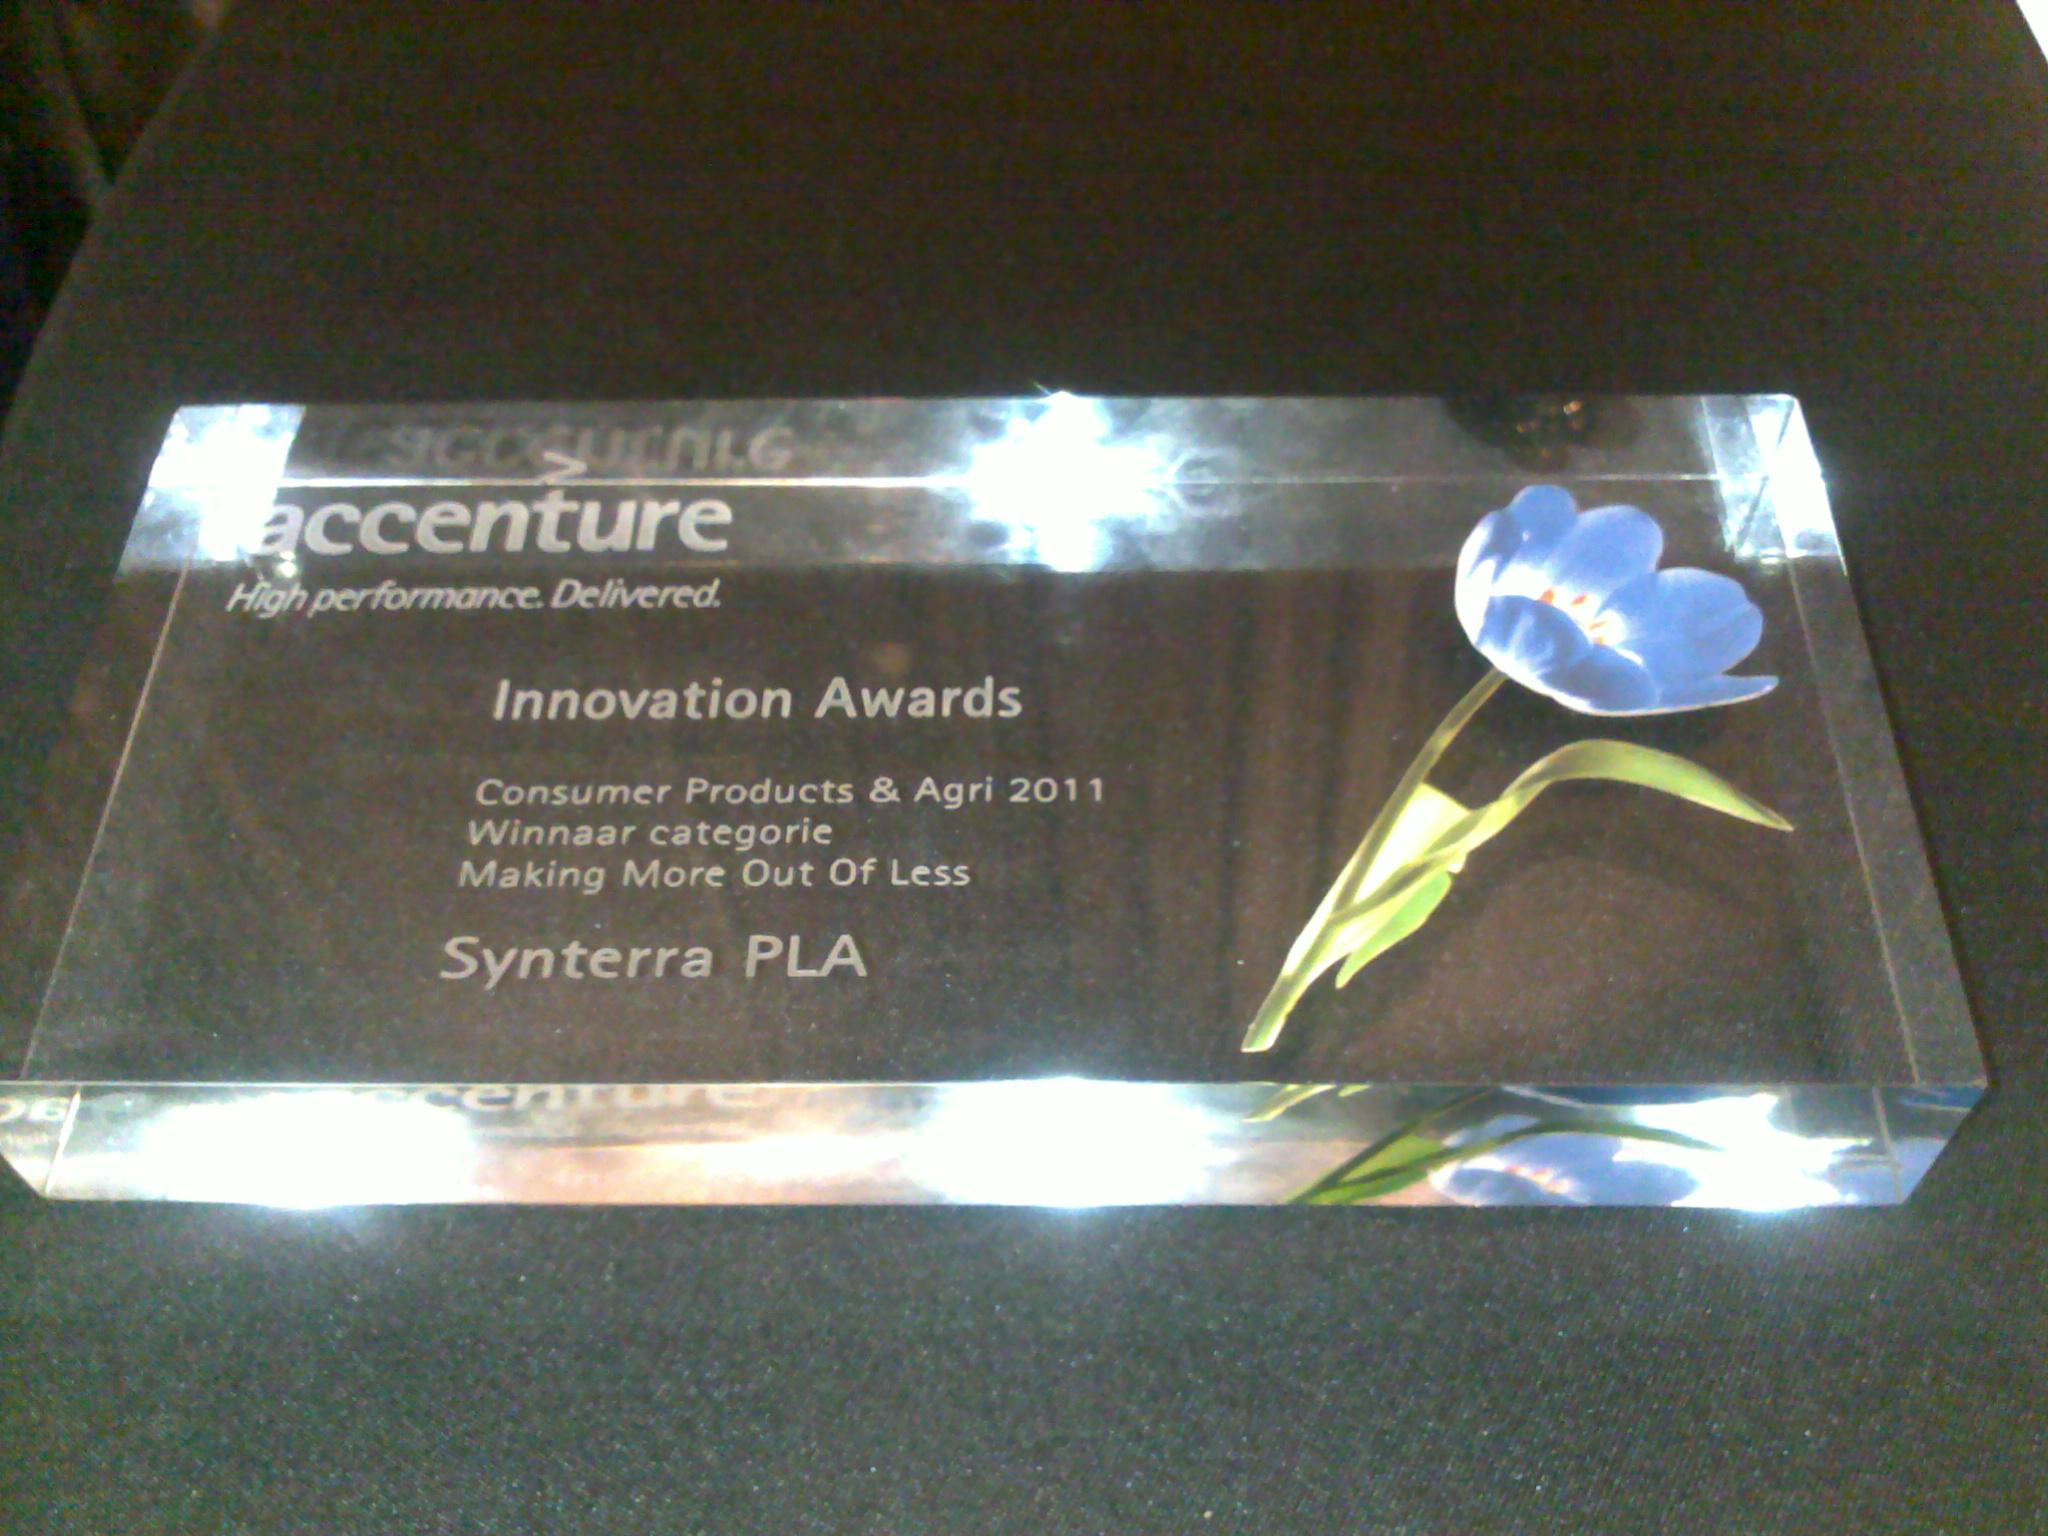 Innovation awards